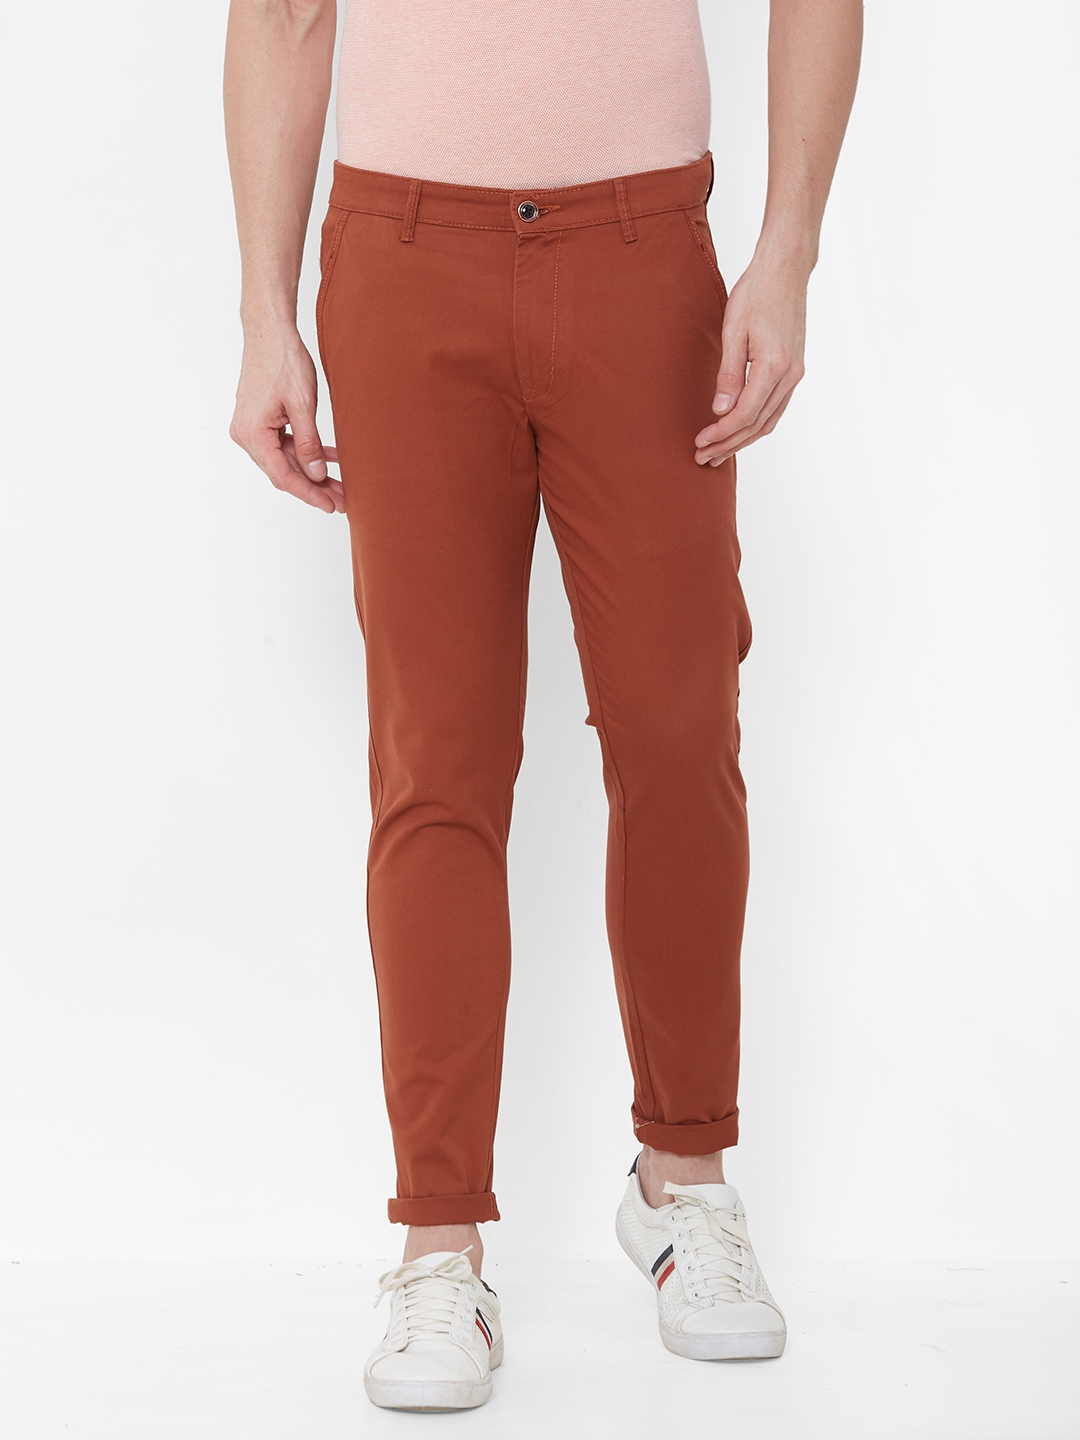 Livewire | Livewire Men's Cotton Lycra Rust Slim Fit Solid Trouser 0